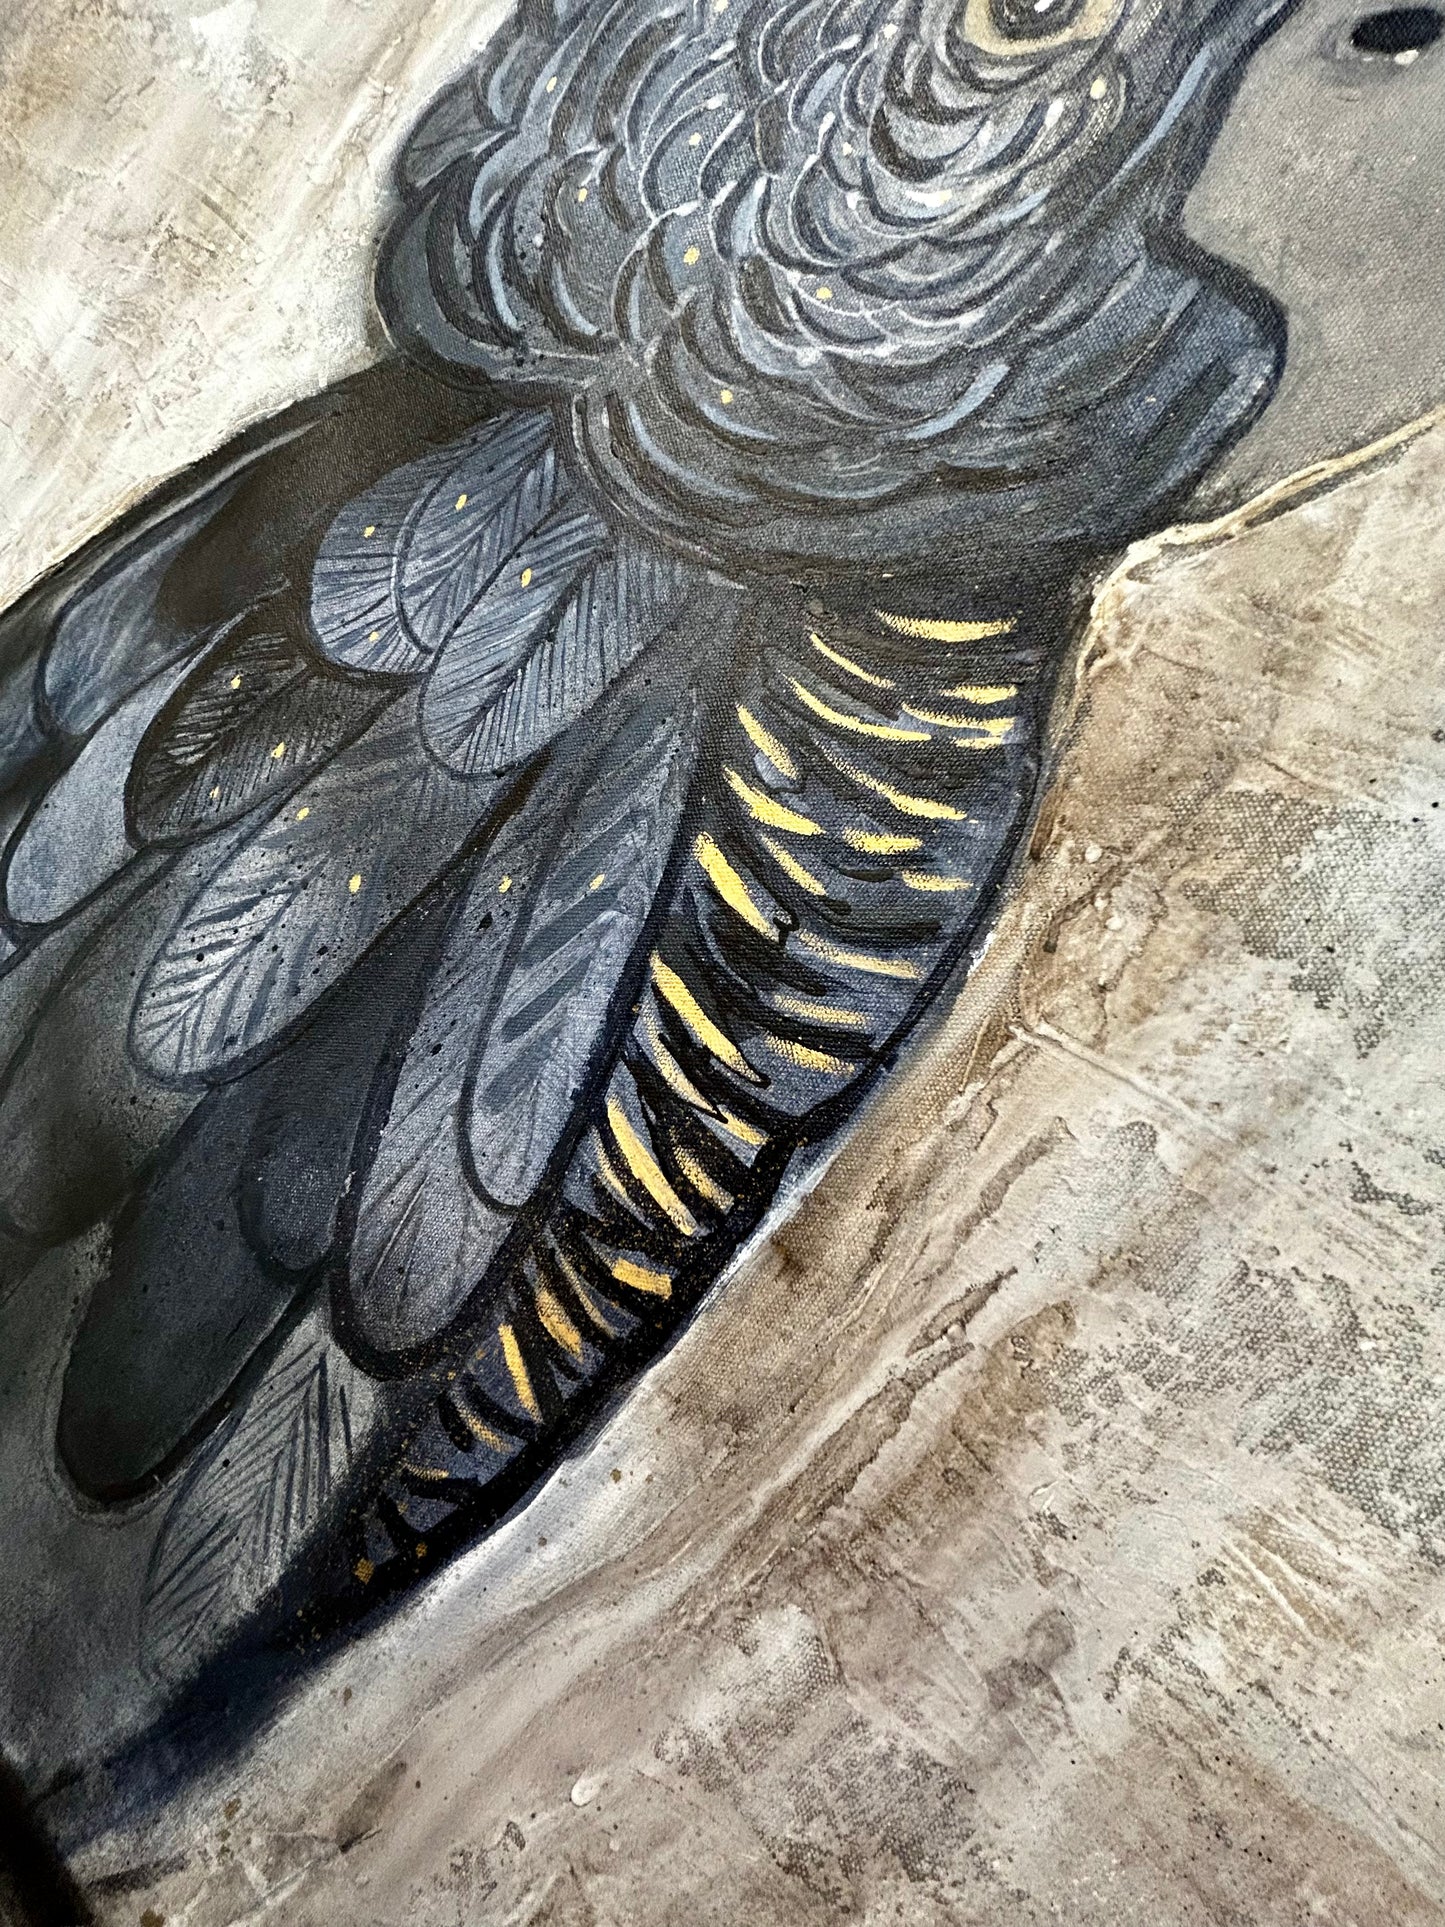 'Black Cockatoo' Original Artwork